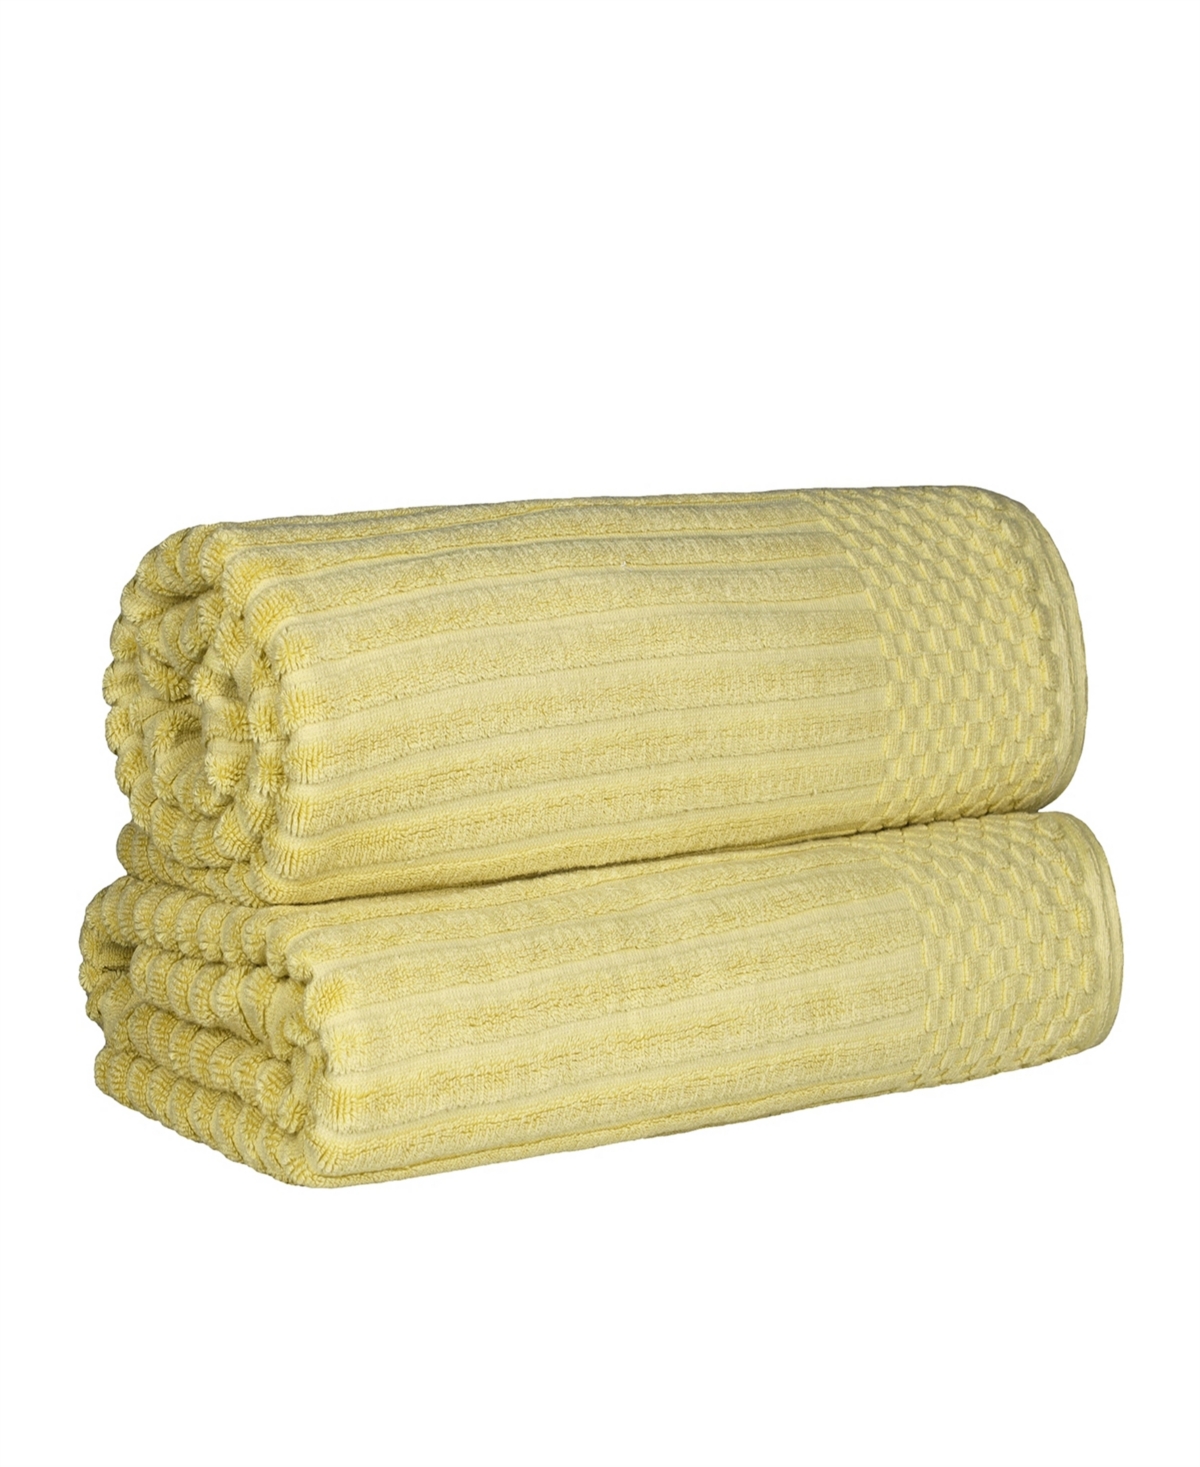 Superior Soho Checkered Border Cotton 2 Piece Bath Sheet Set, 68" X 34" In Golden